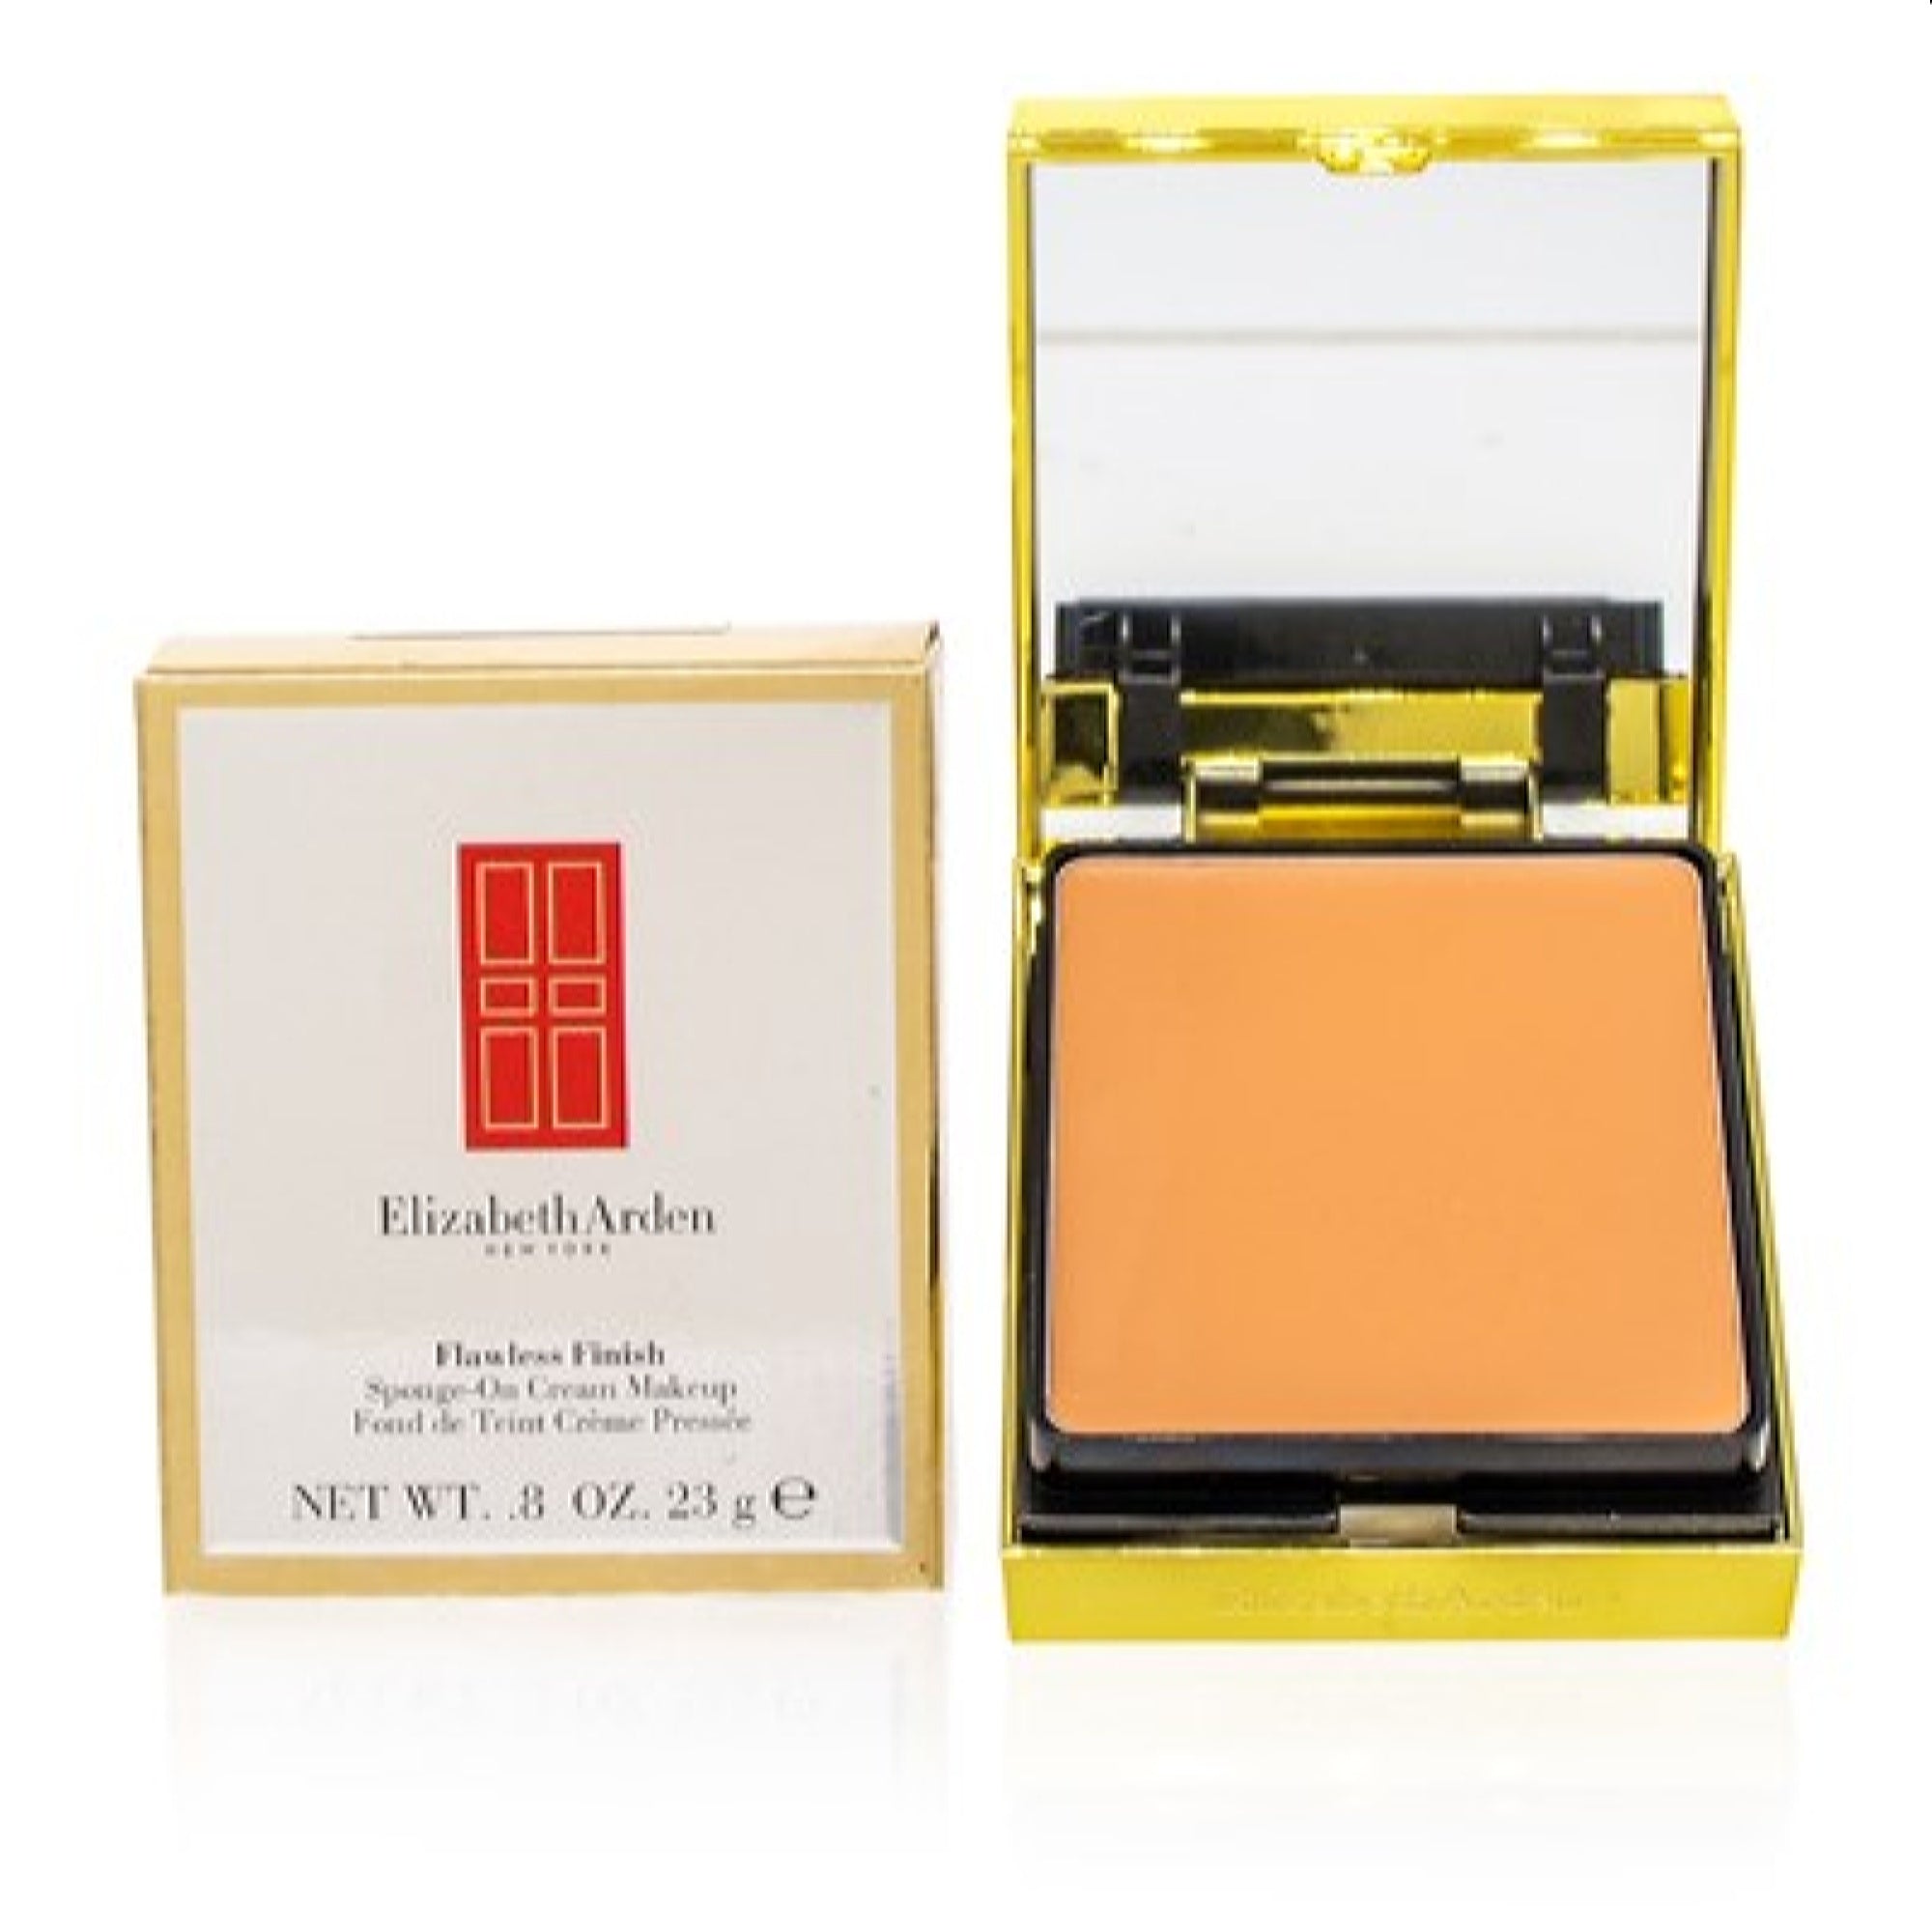 Elizabeth Arden Flawless Finish Sponge-On Cream Makeup Gentle Beige .8 -  Bezali